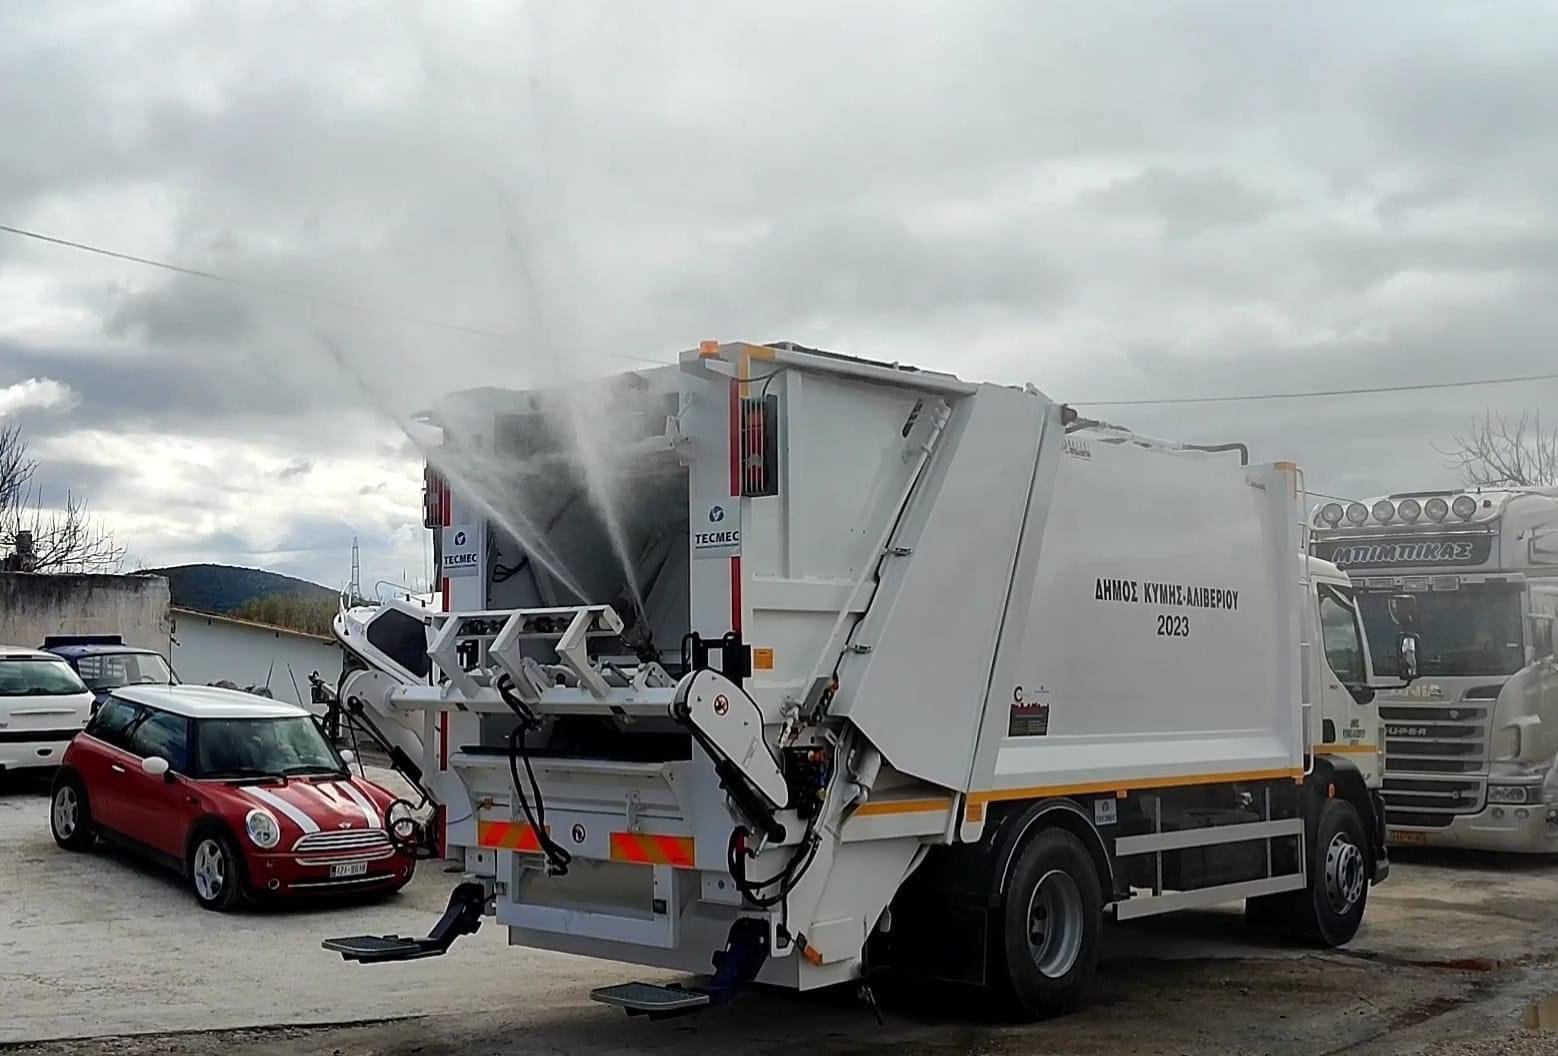 Εύβοια: Αυτός ο Δήμος απέκτησε υπερσύγχρονο απορριμματοφόρο για να πλένει τους κάδους (εικόνες)